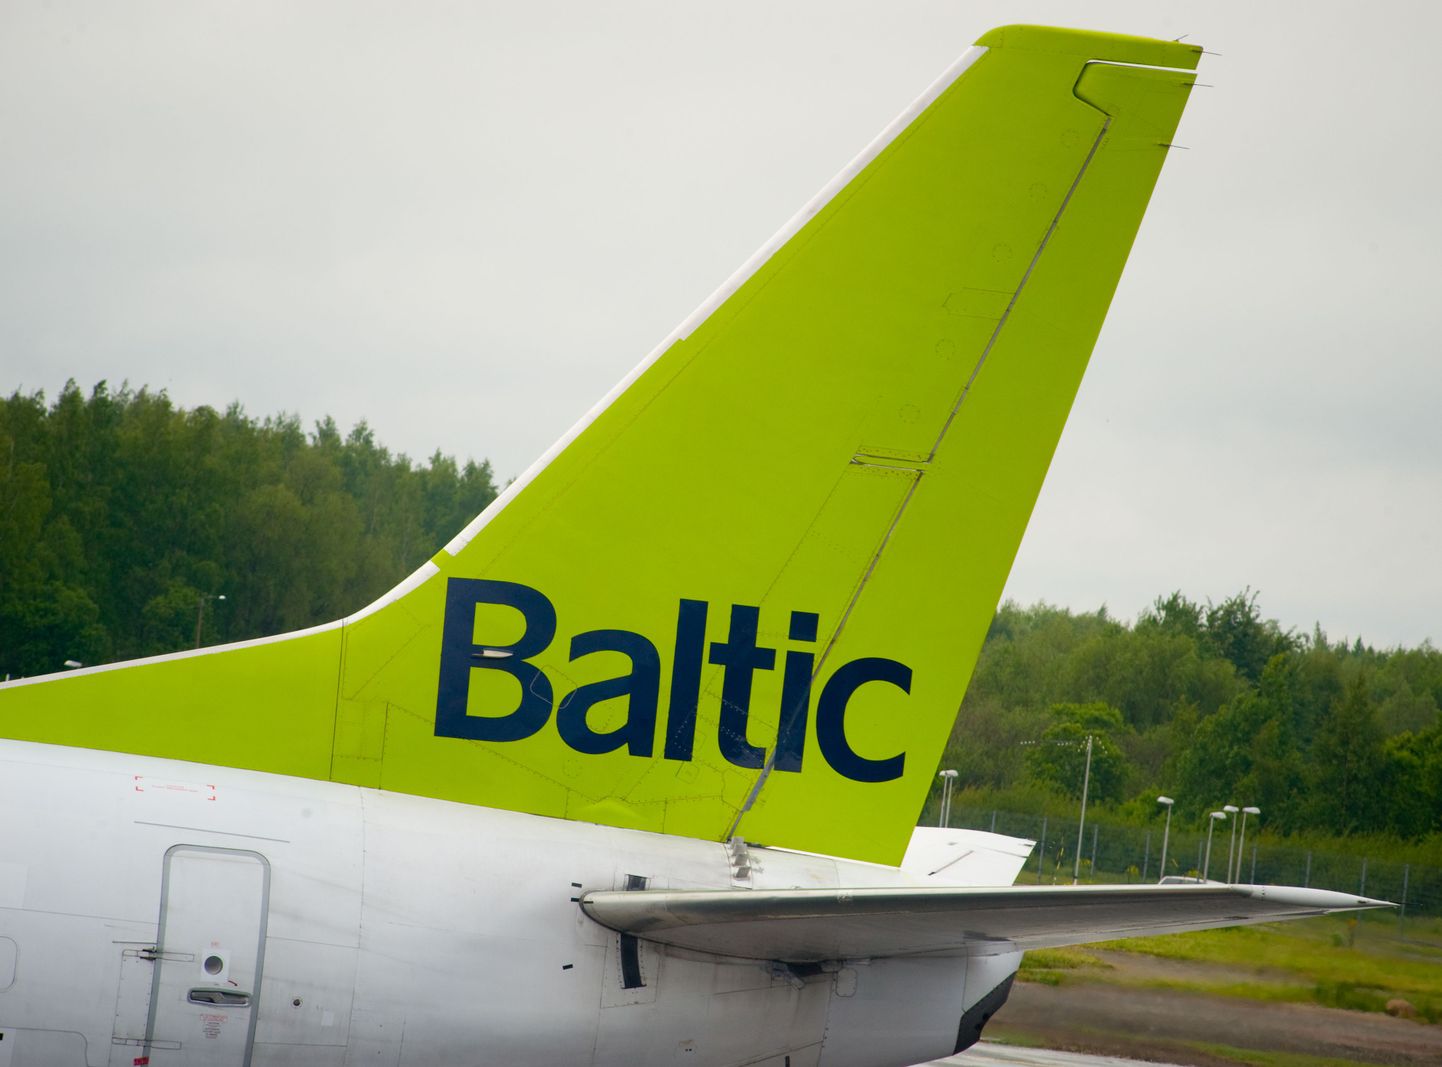 Airbalticu Boeing Tallinna lennujaamas.